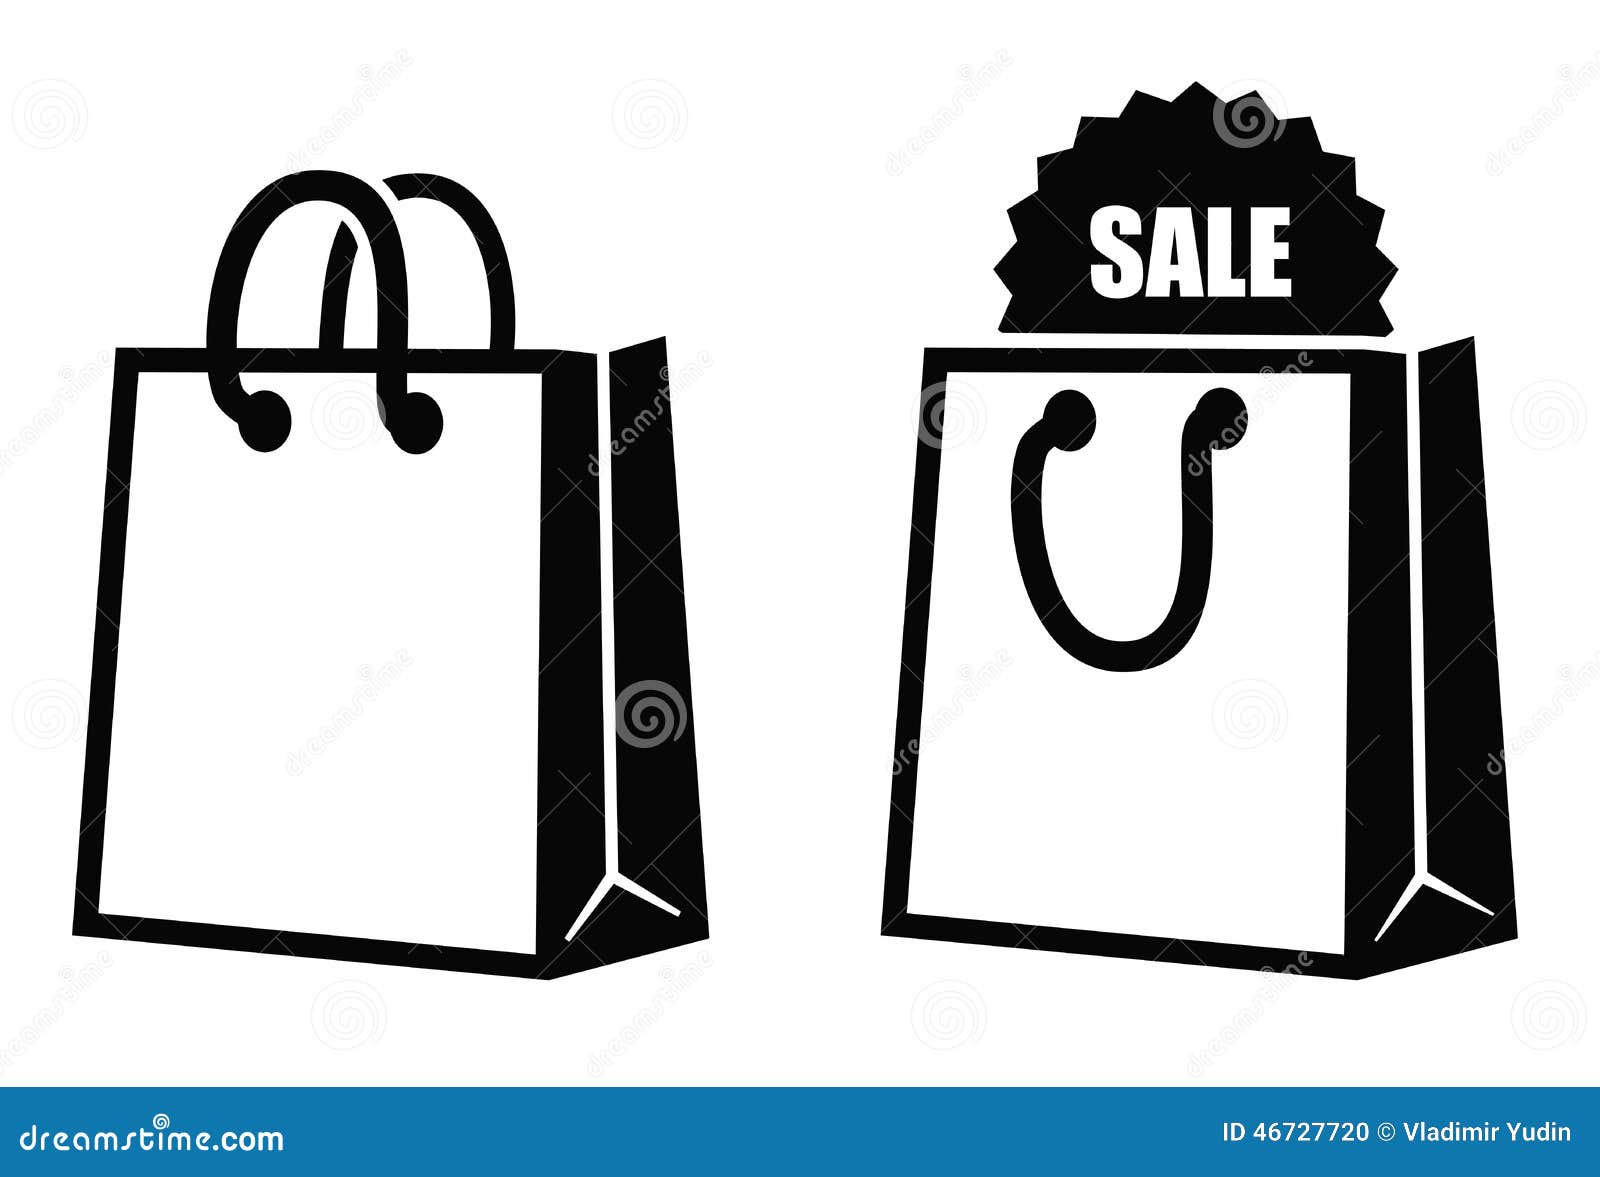 shopping bag clipart vector - photo #36